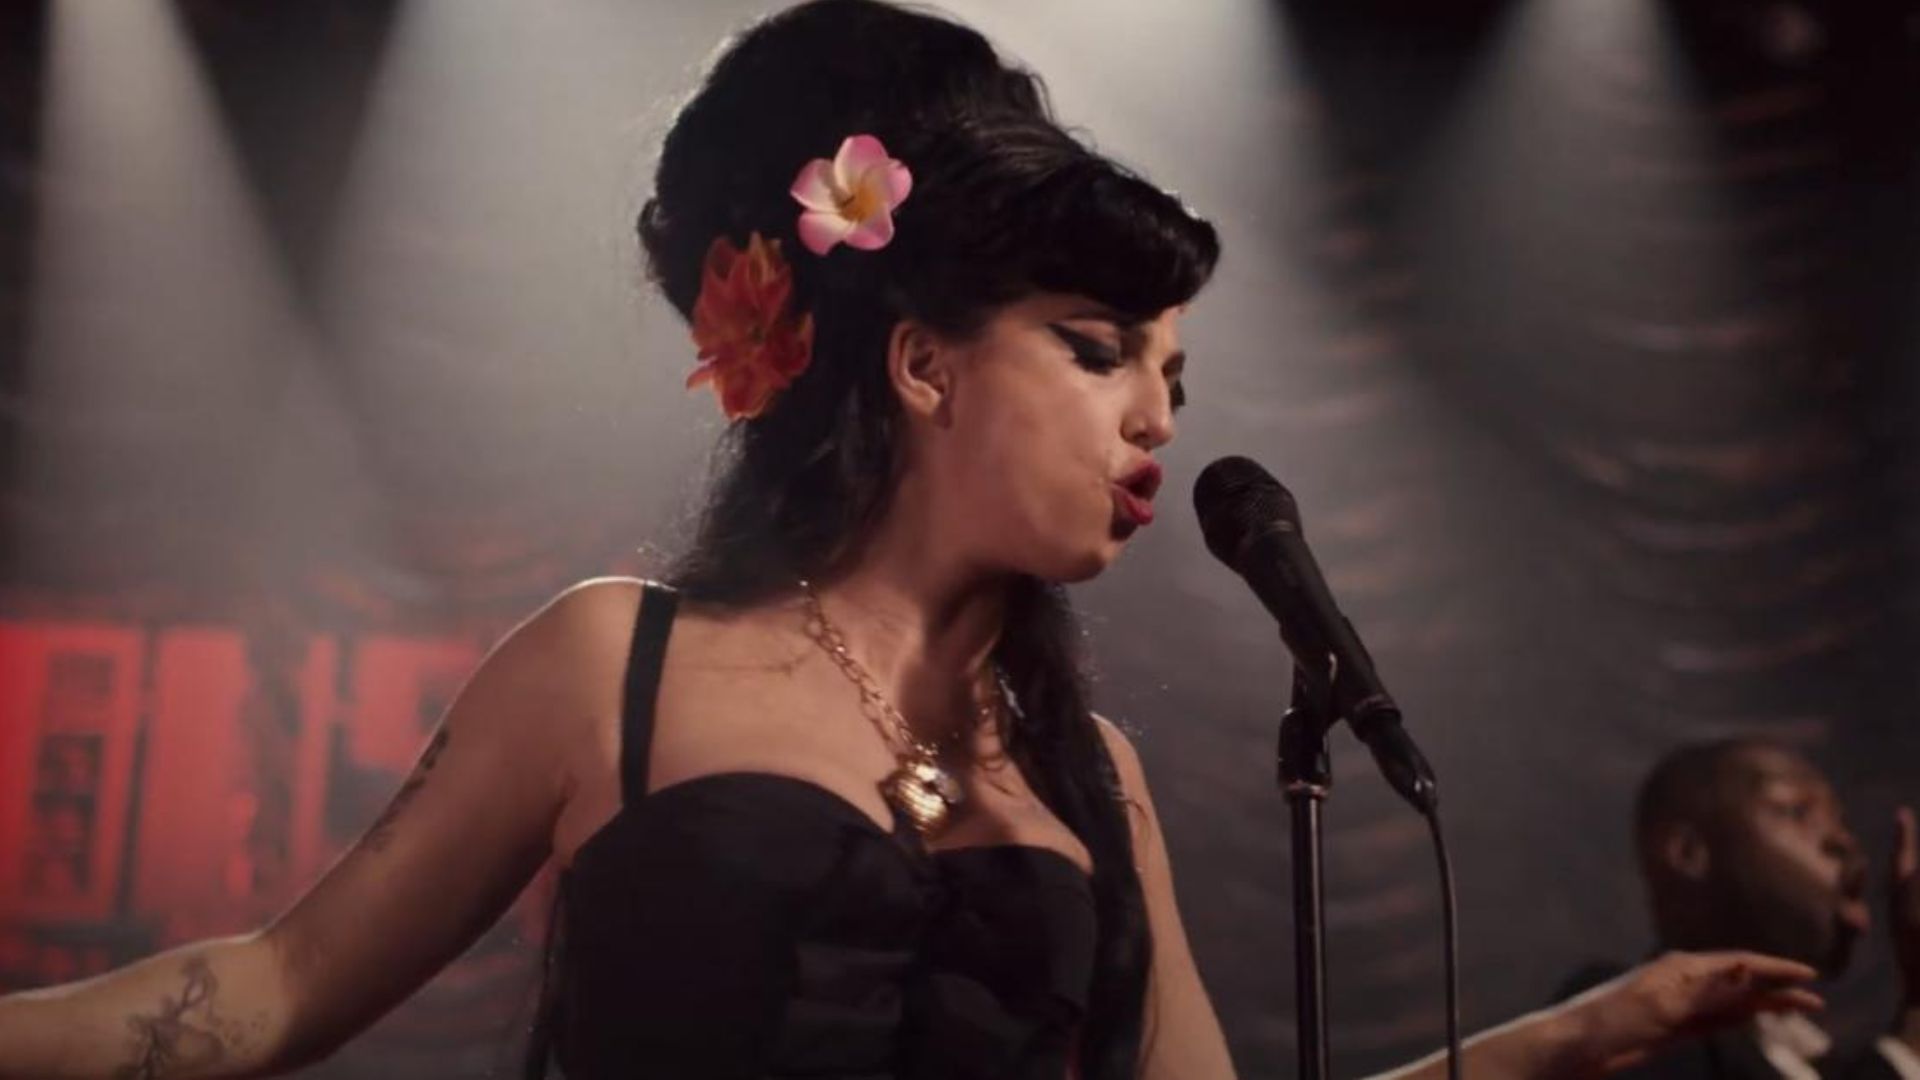 Divulgado trailer oficial de Back to Black, a cinebiografia de Amy Winehouse